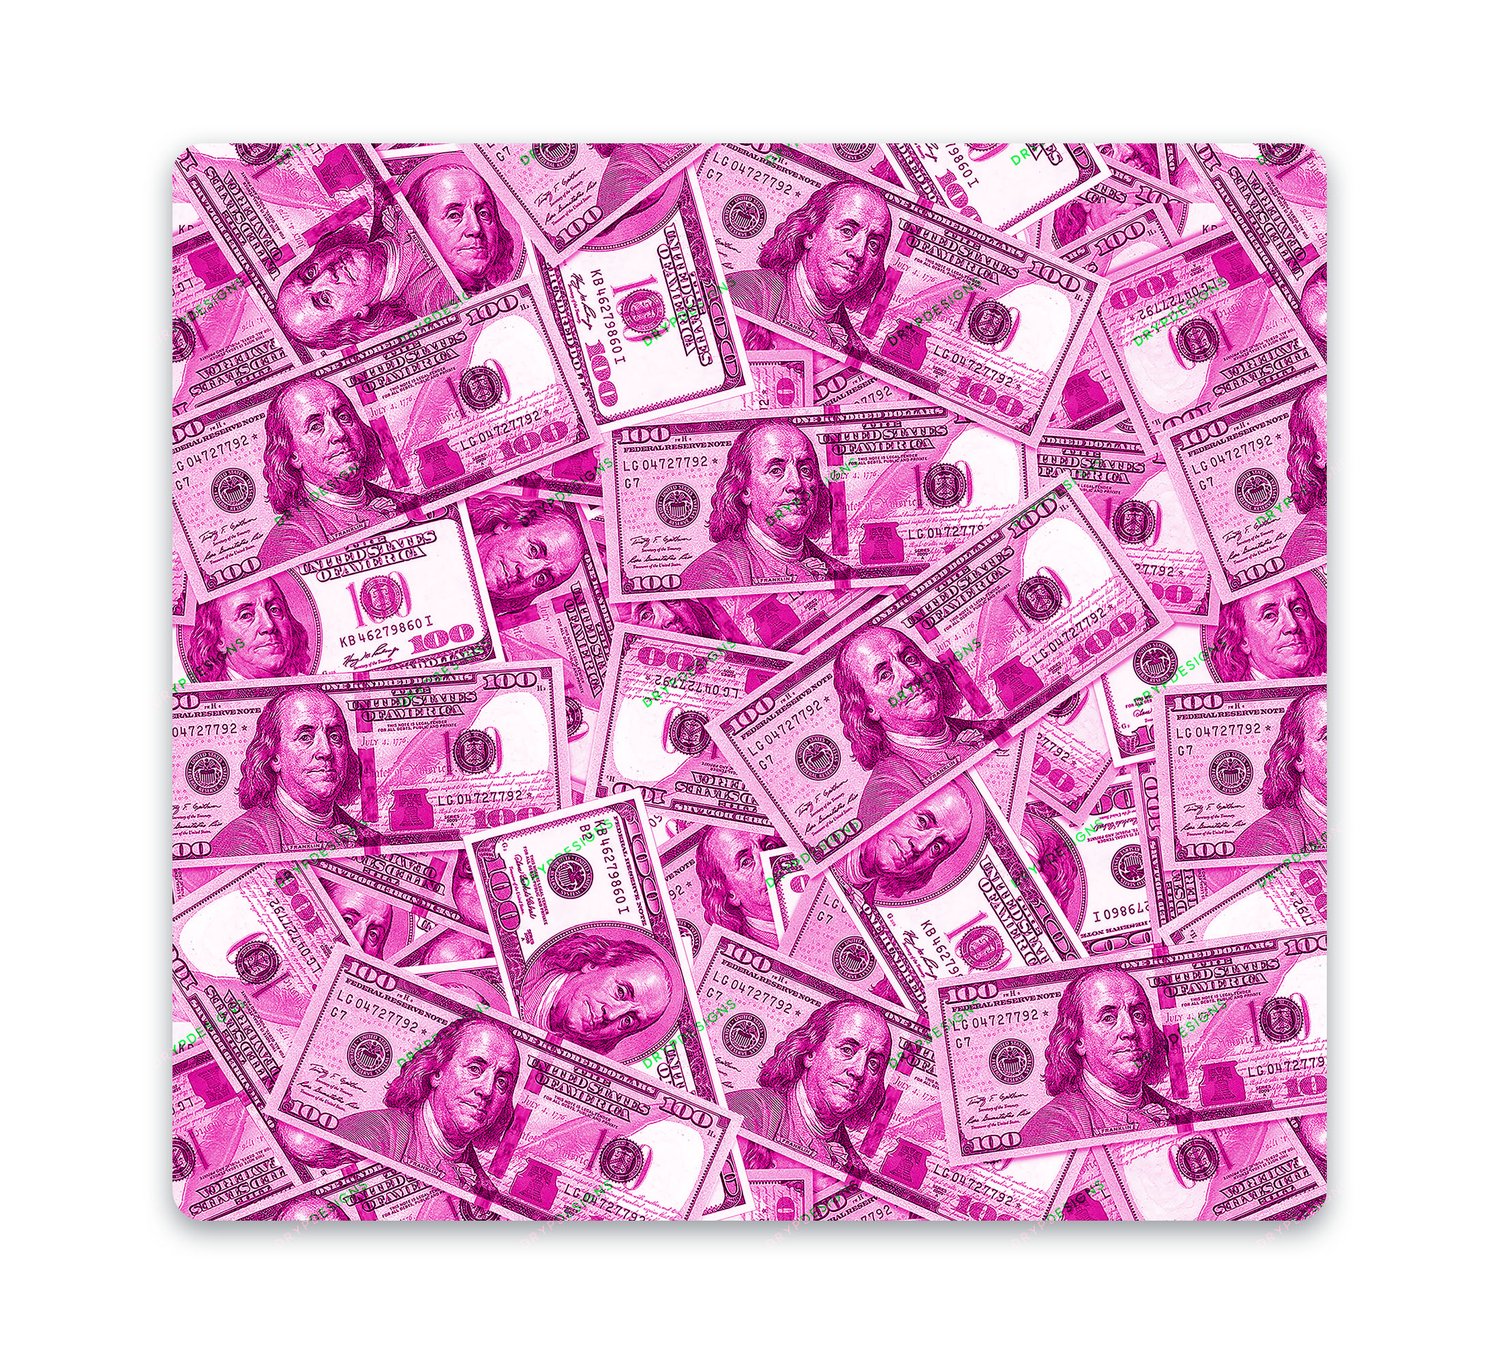 Tiền đô la Mỹ luôn là một trong những loại tiền được nhiều người yêu thích và quan tâm. Với hình nền tiền đô la 100 đỏ, bạn có thể tận hưởng vẻ đẹp sang trọng và quyến rũ của những tờ tiền này. Hãy khám phá những hình ảnh này để tạo nên một không gian đầy phong cách và cá tính.